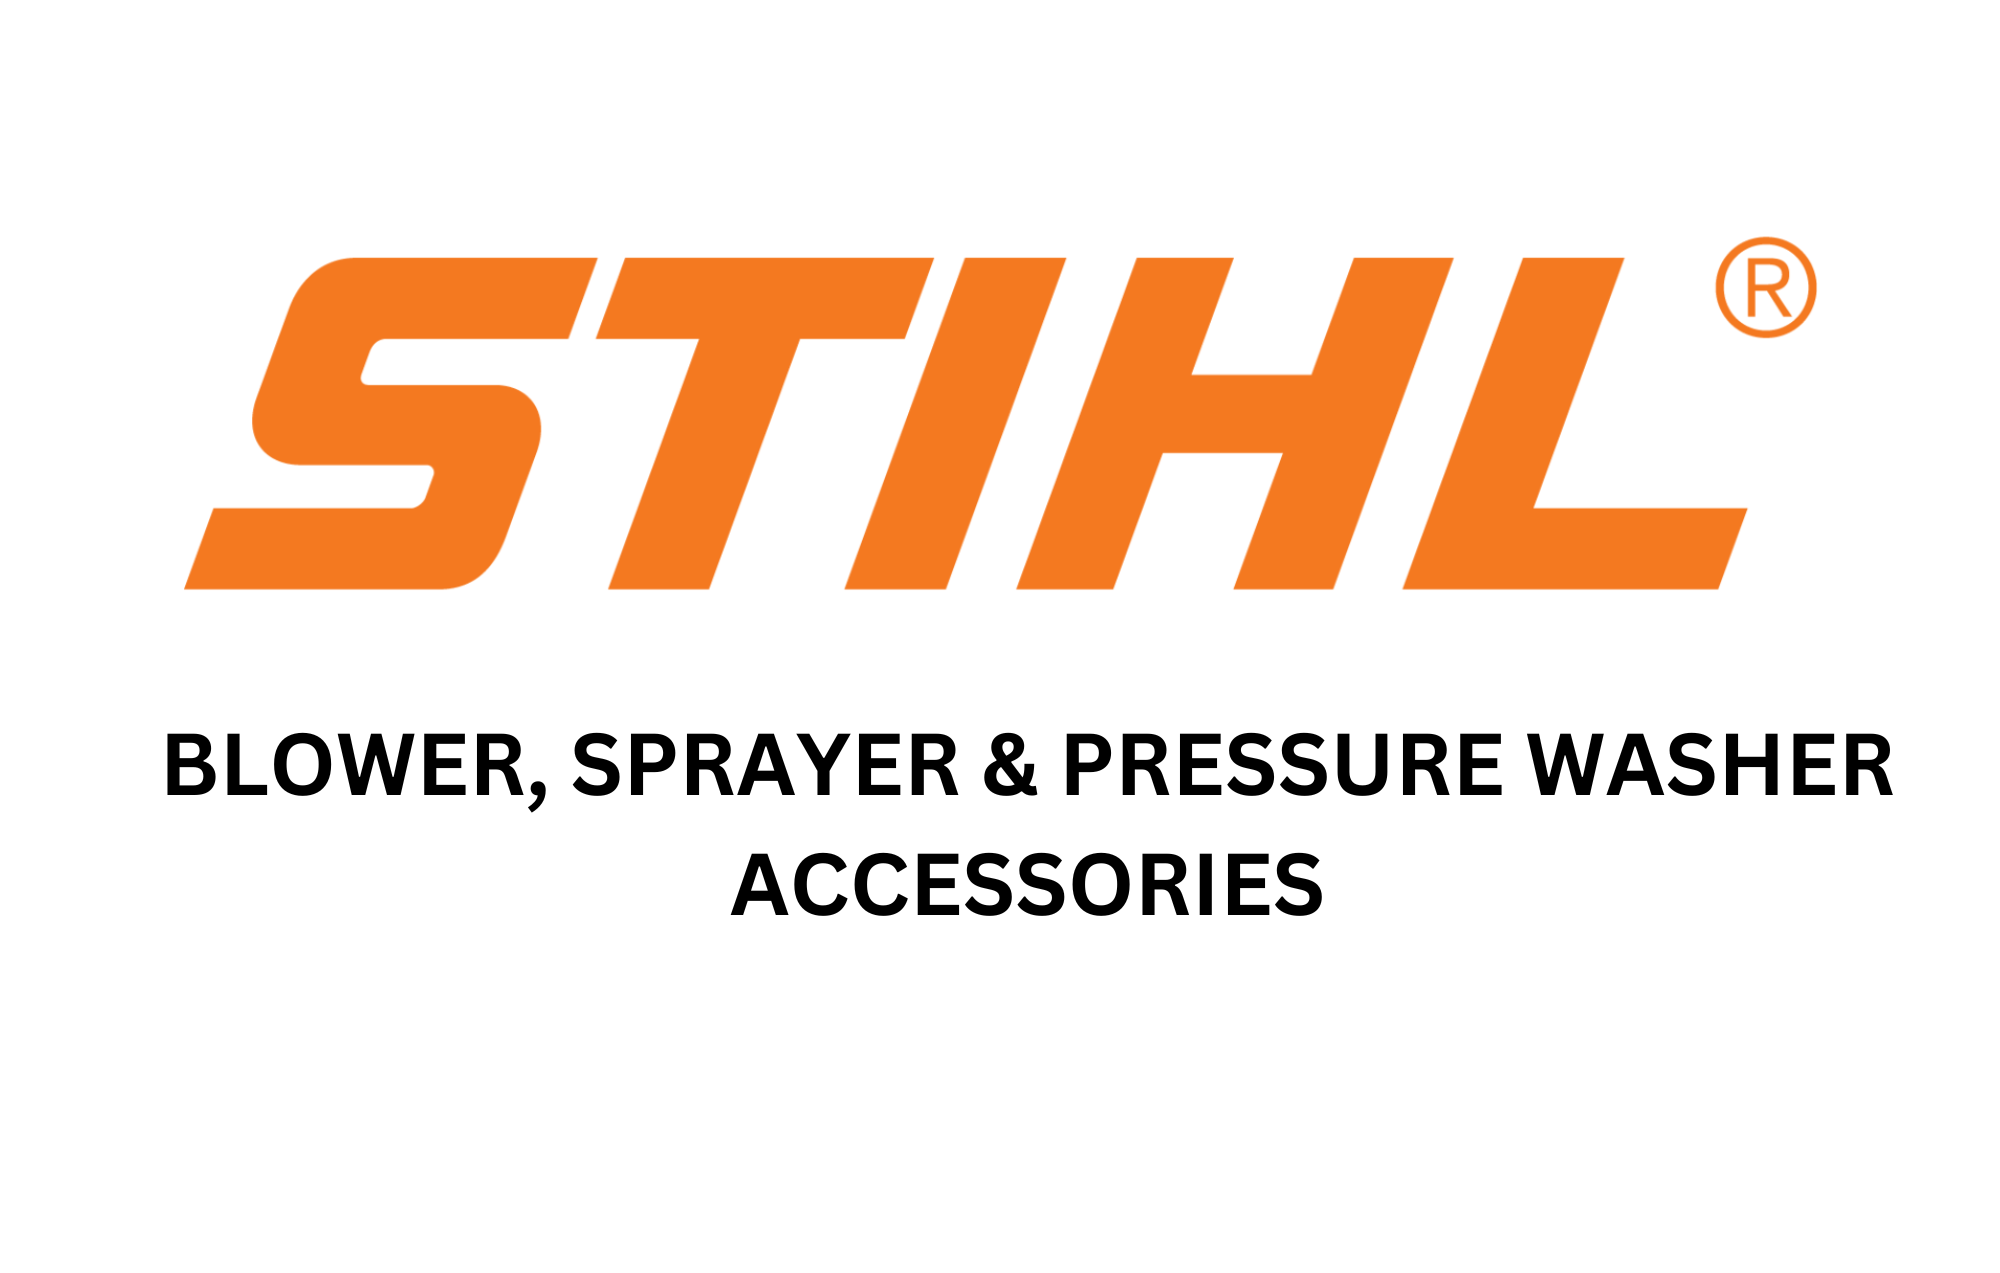 Blower, Sprayer & Pressure washer accessories 